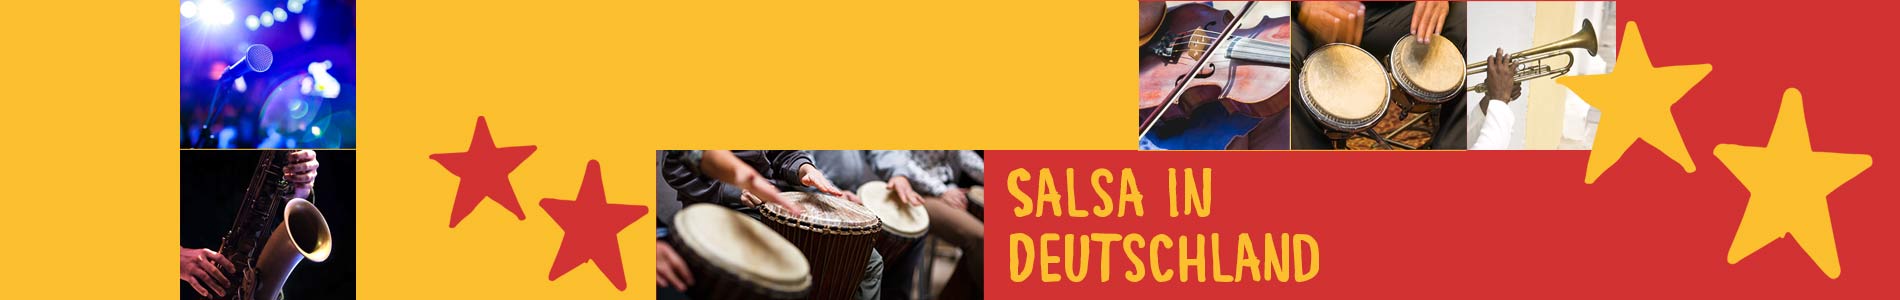 Salsa in Deisenhausen – Salsa lernen und tanzen, Tanzkurse, Partys, Veranstaltungen